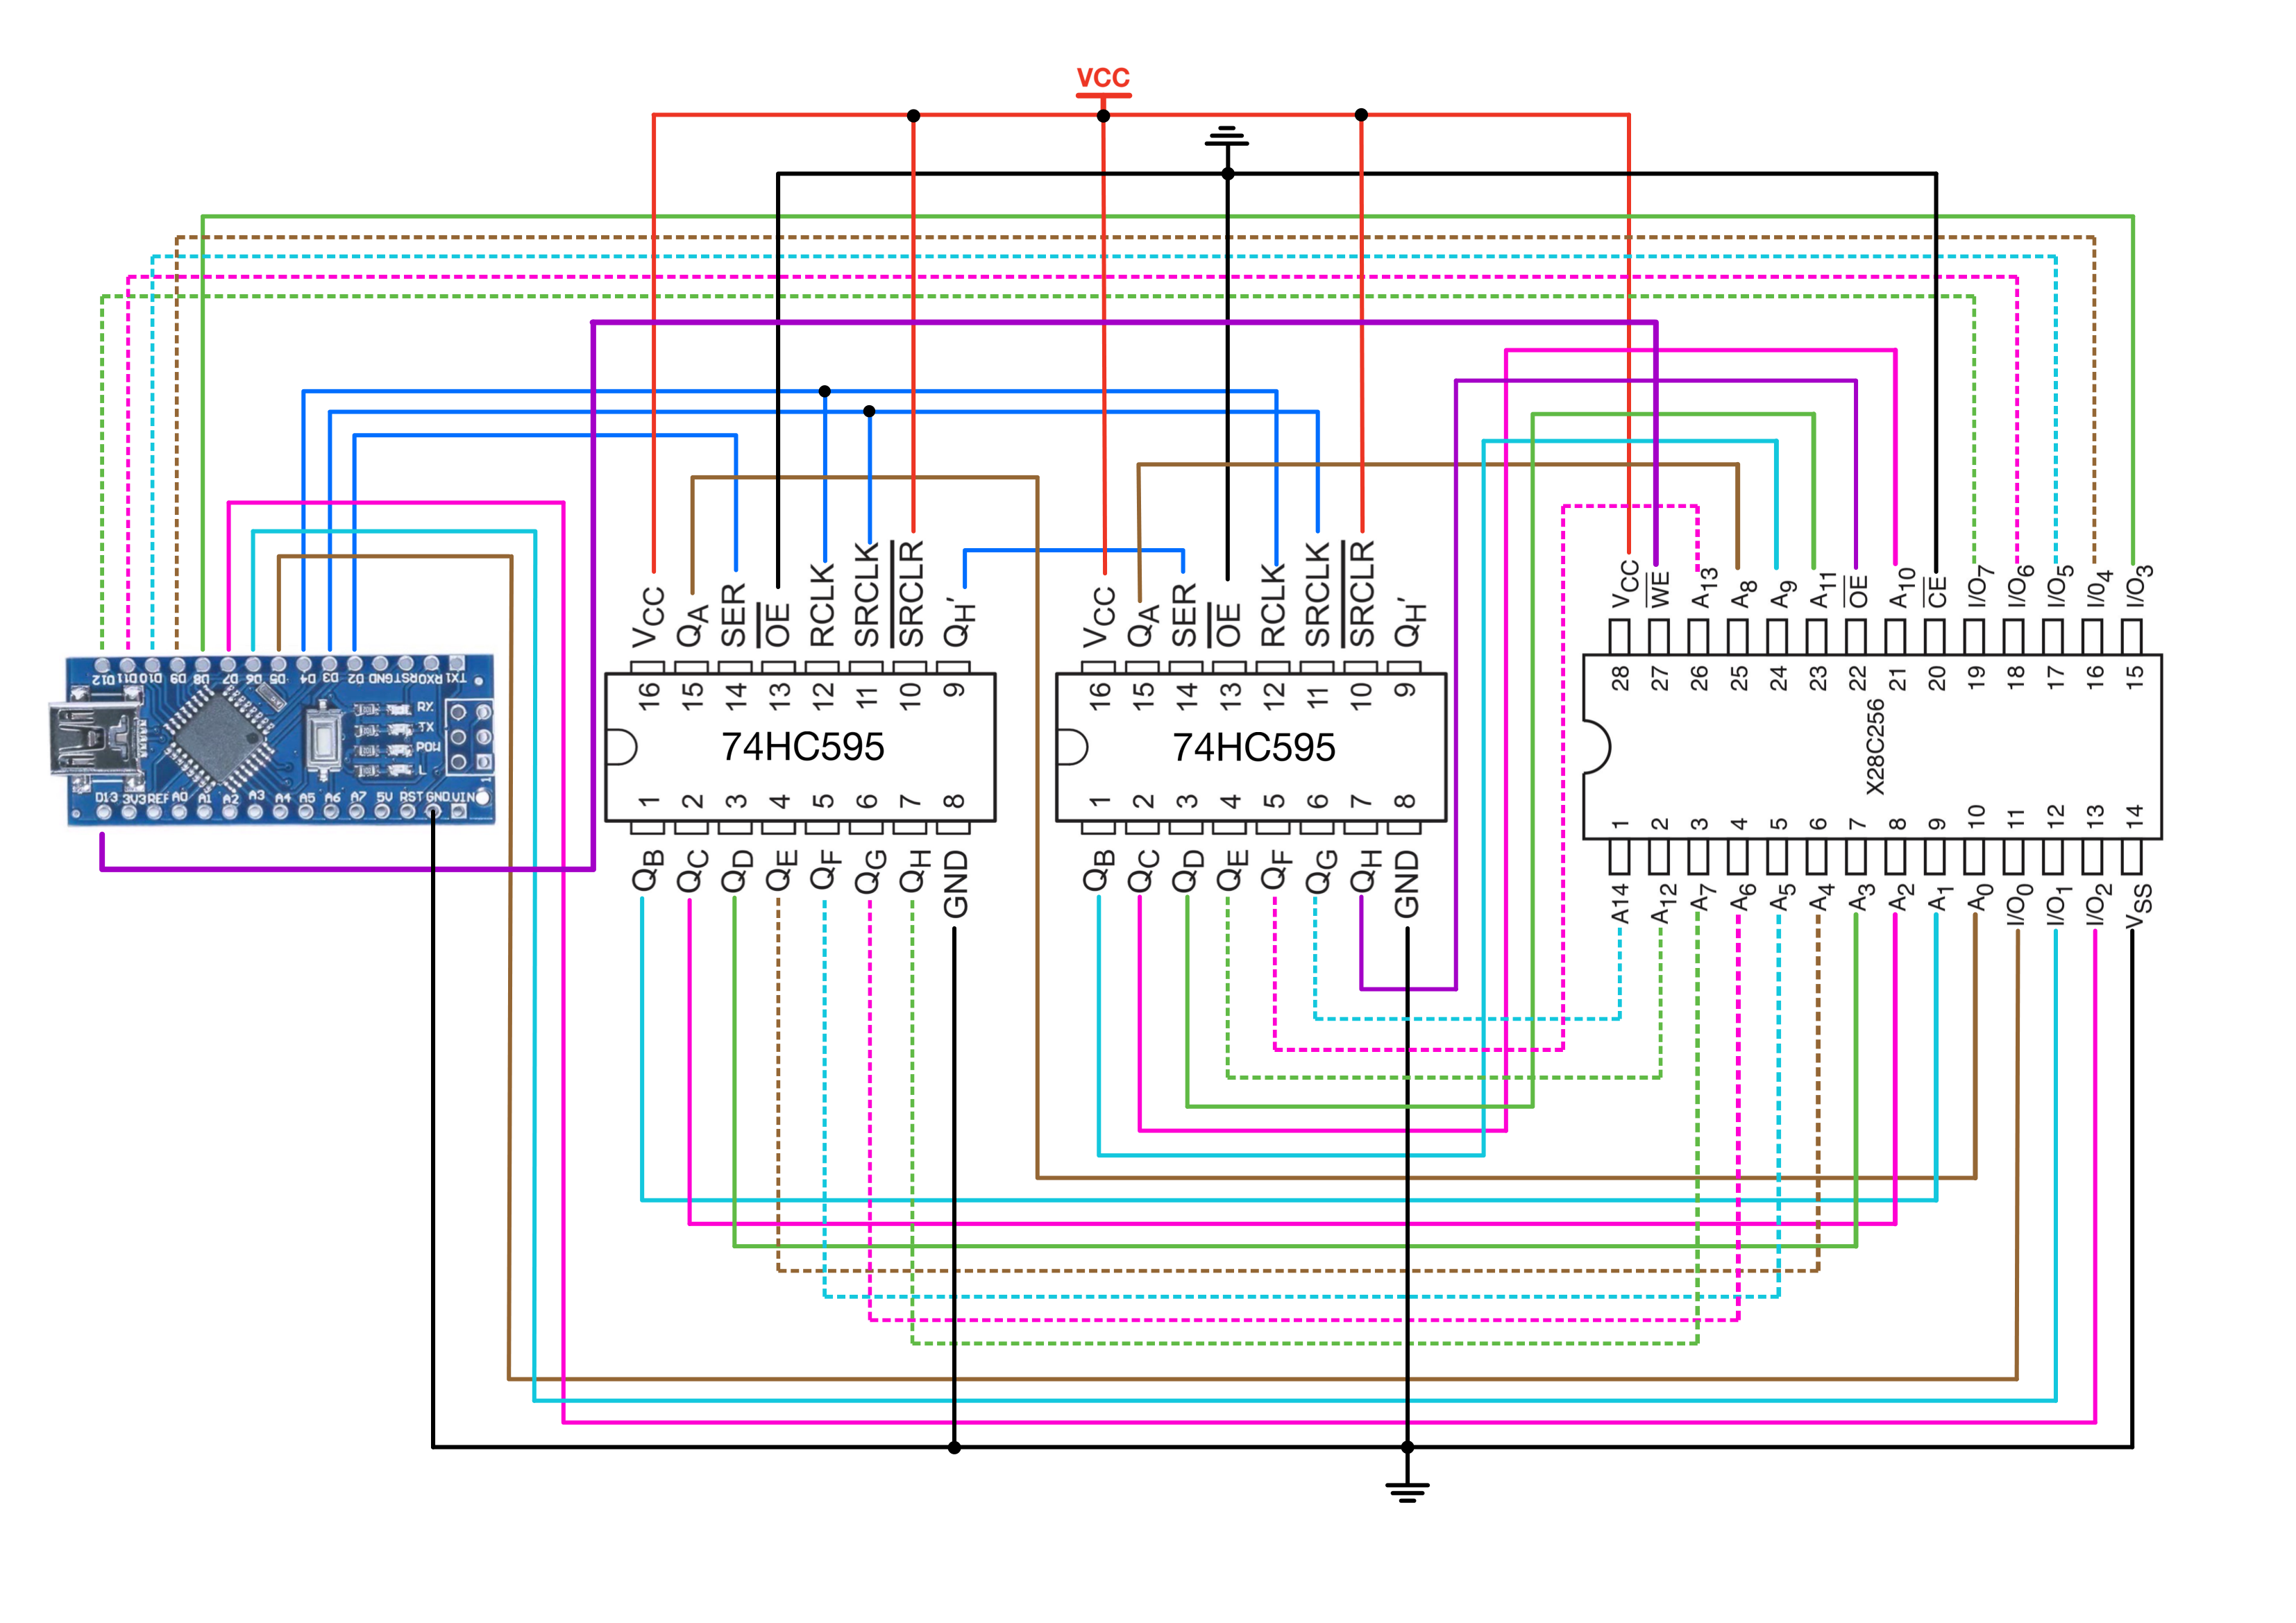 Figure 16: EEPROM Programmer Schematic